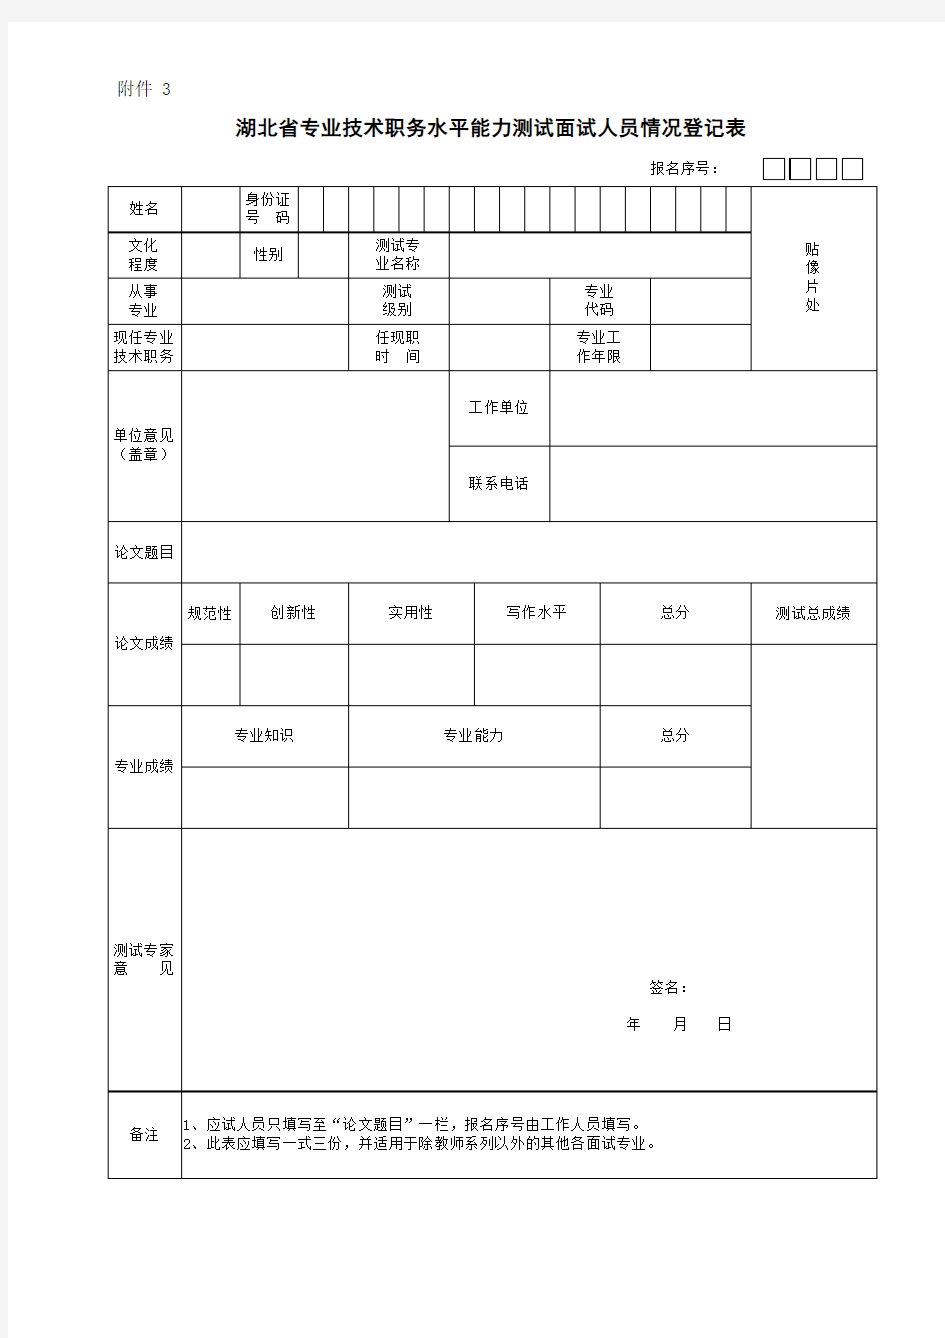 湖北省专业技术职务水平能力测试面试人员情况登记表